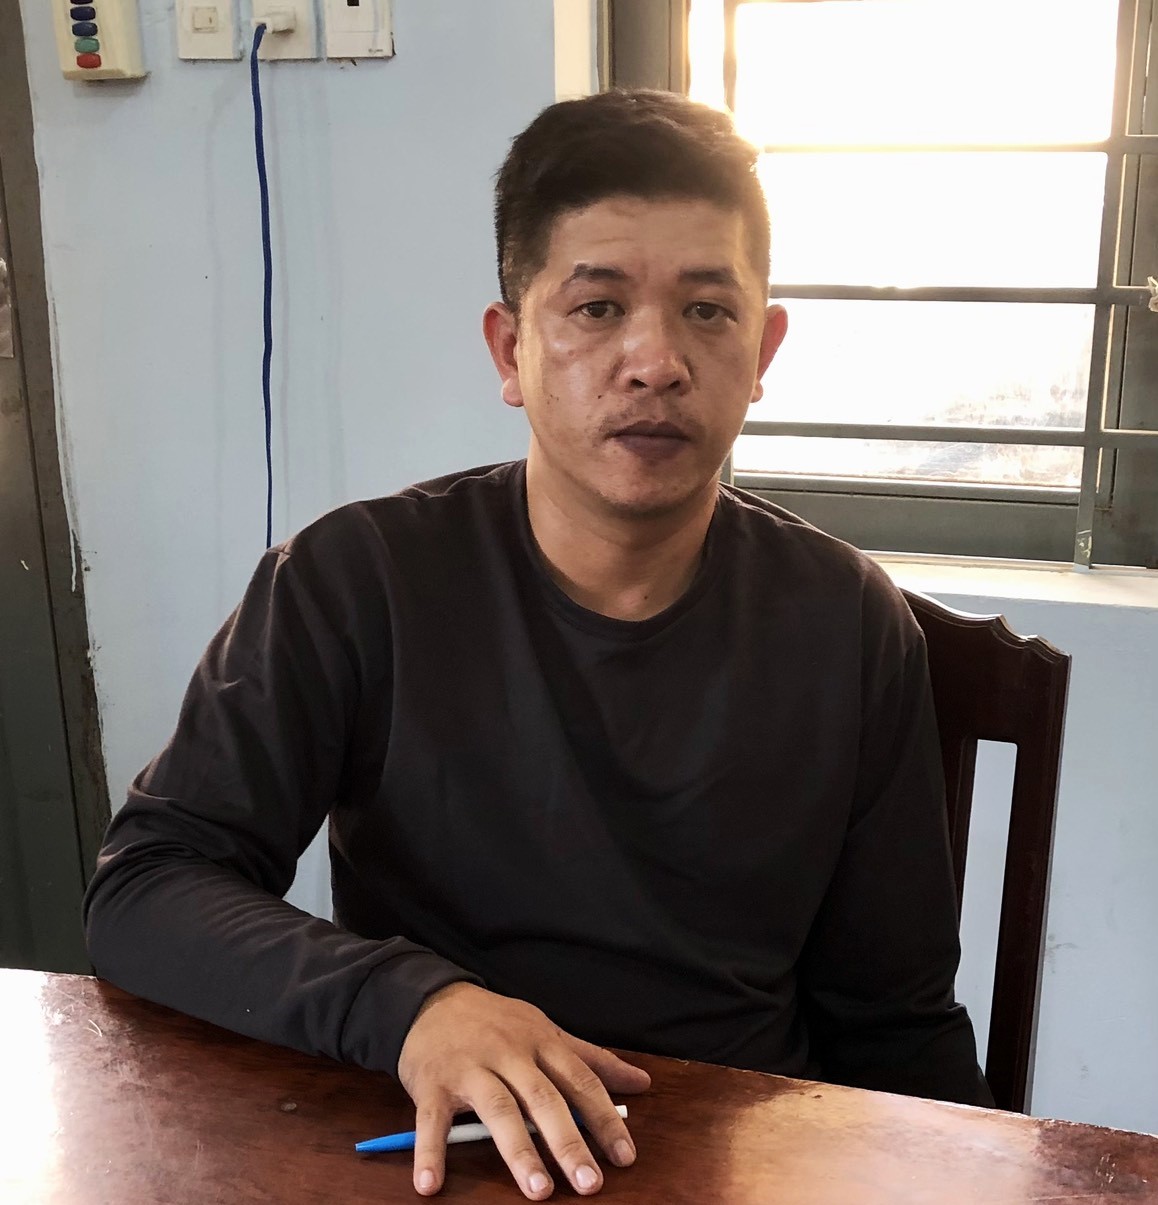 Tài xế Phạm Quang Bạch điều khiển xe khách gây ra vụ tai nạn khiến 1 người tử vong và 2 người bị thương bị khởi tố bắt tạm giam